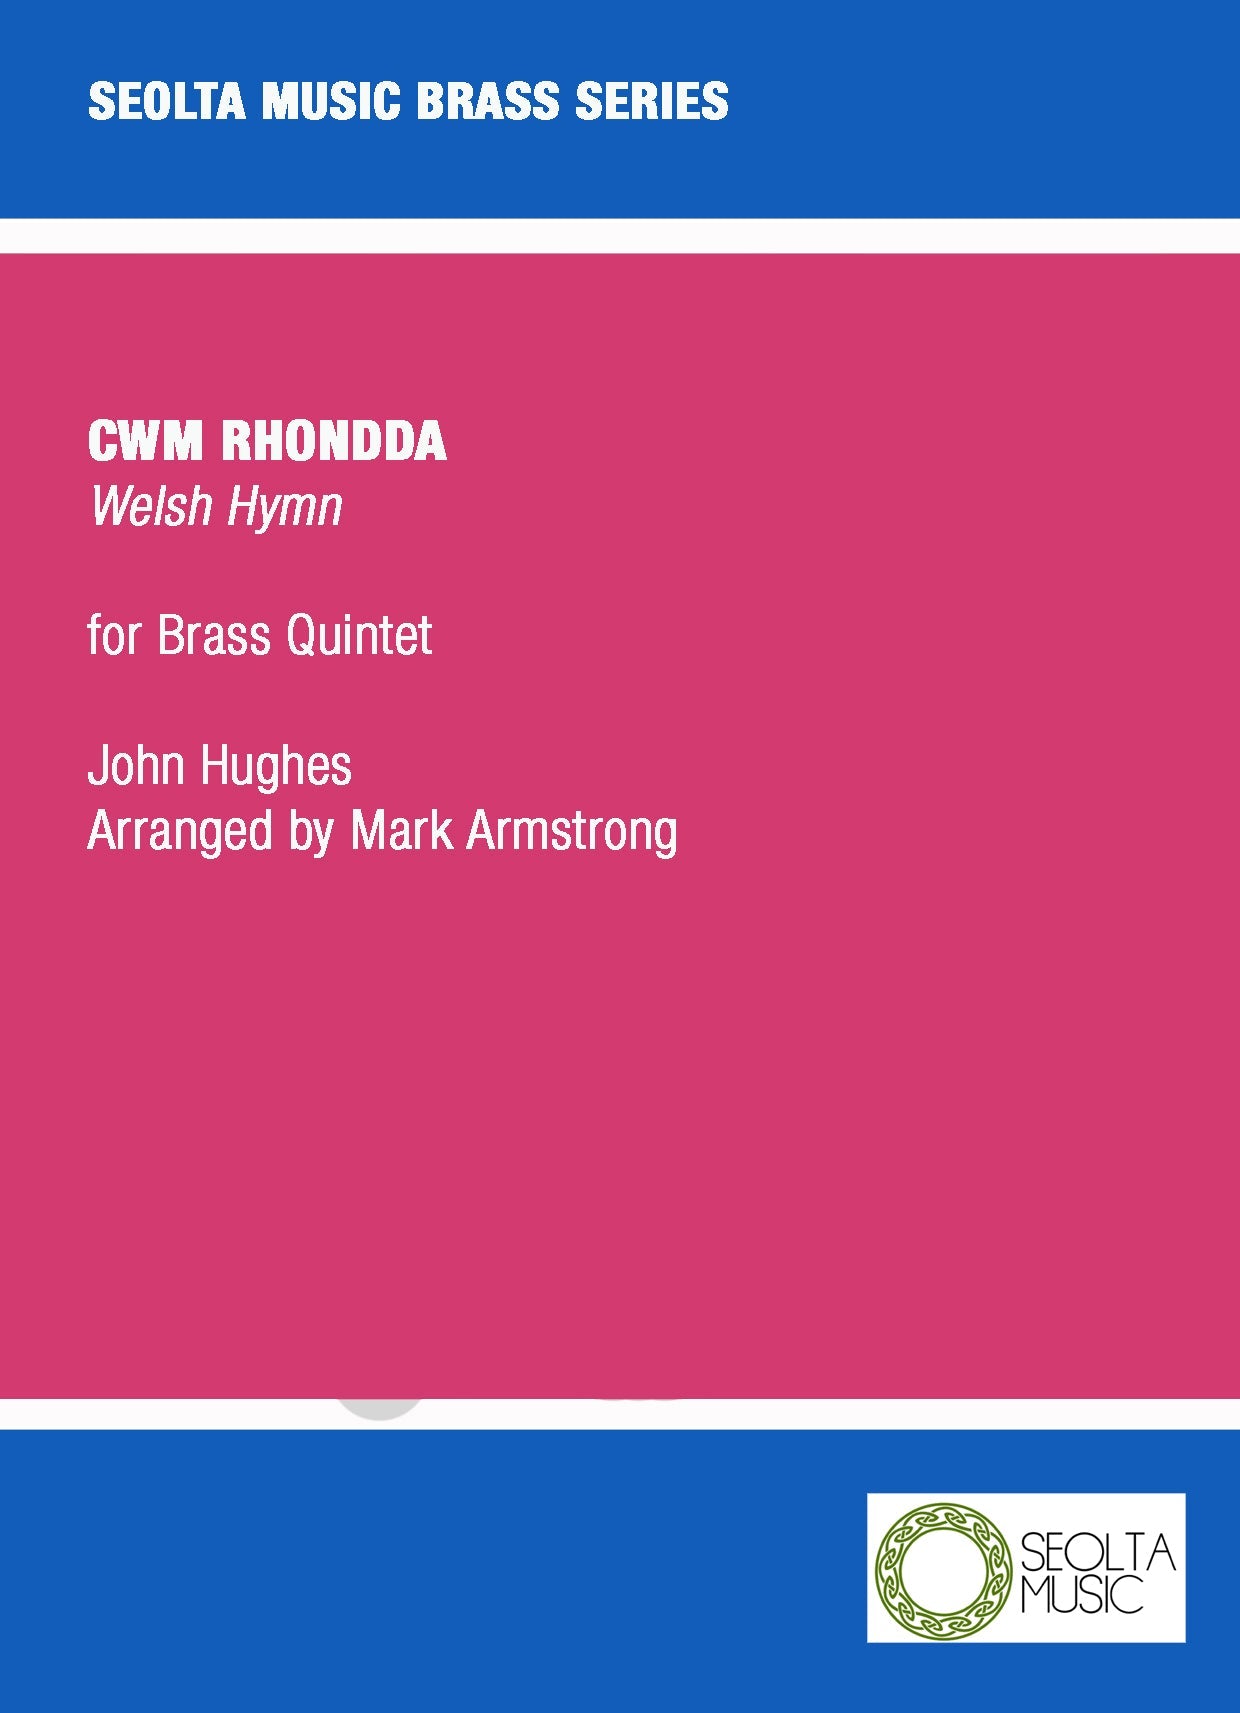 cwm-rhondda-brass-quintet-sheet-music